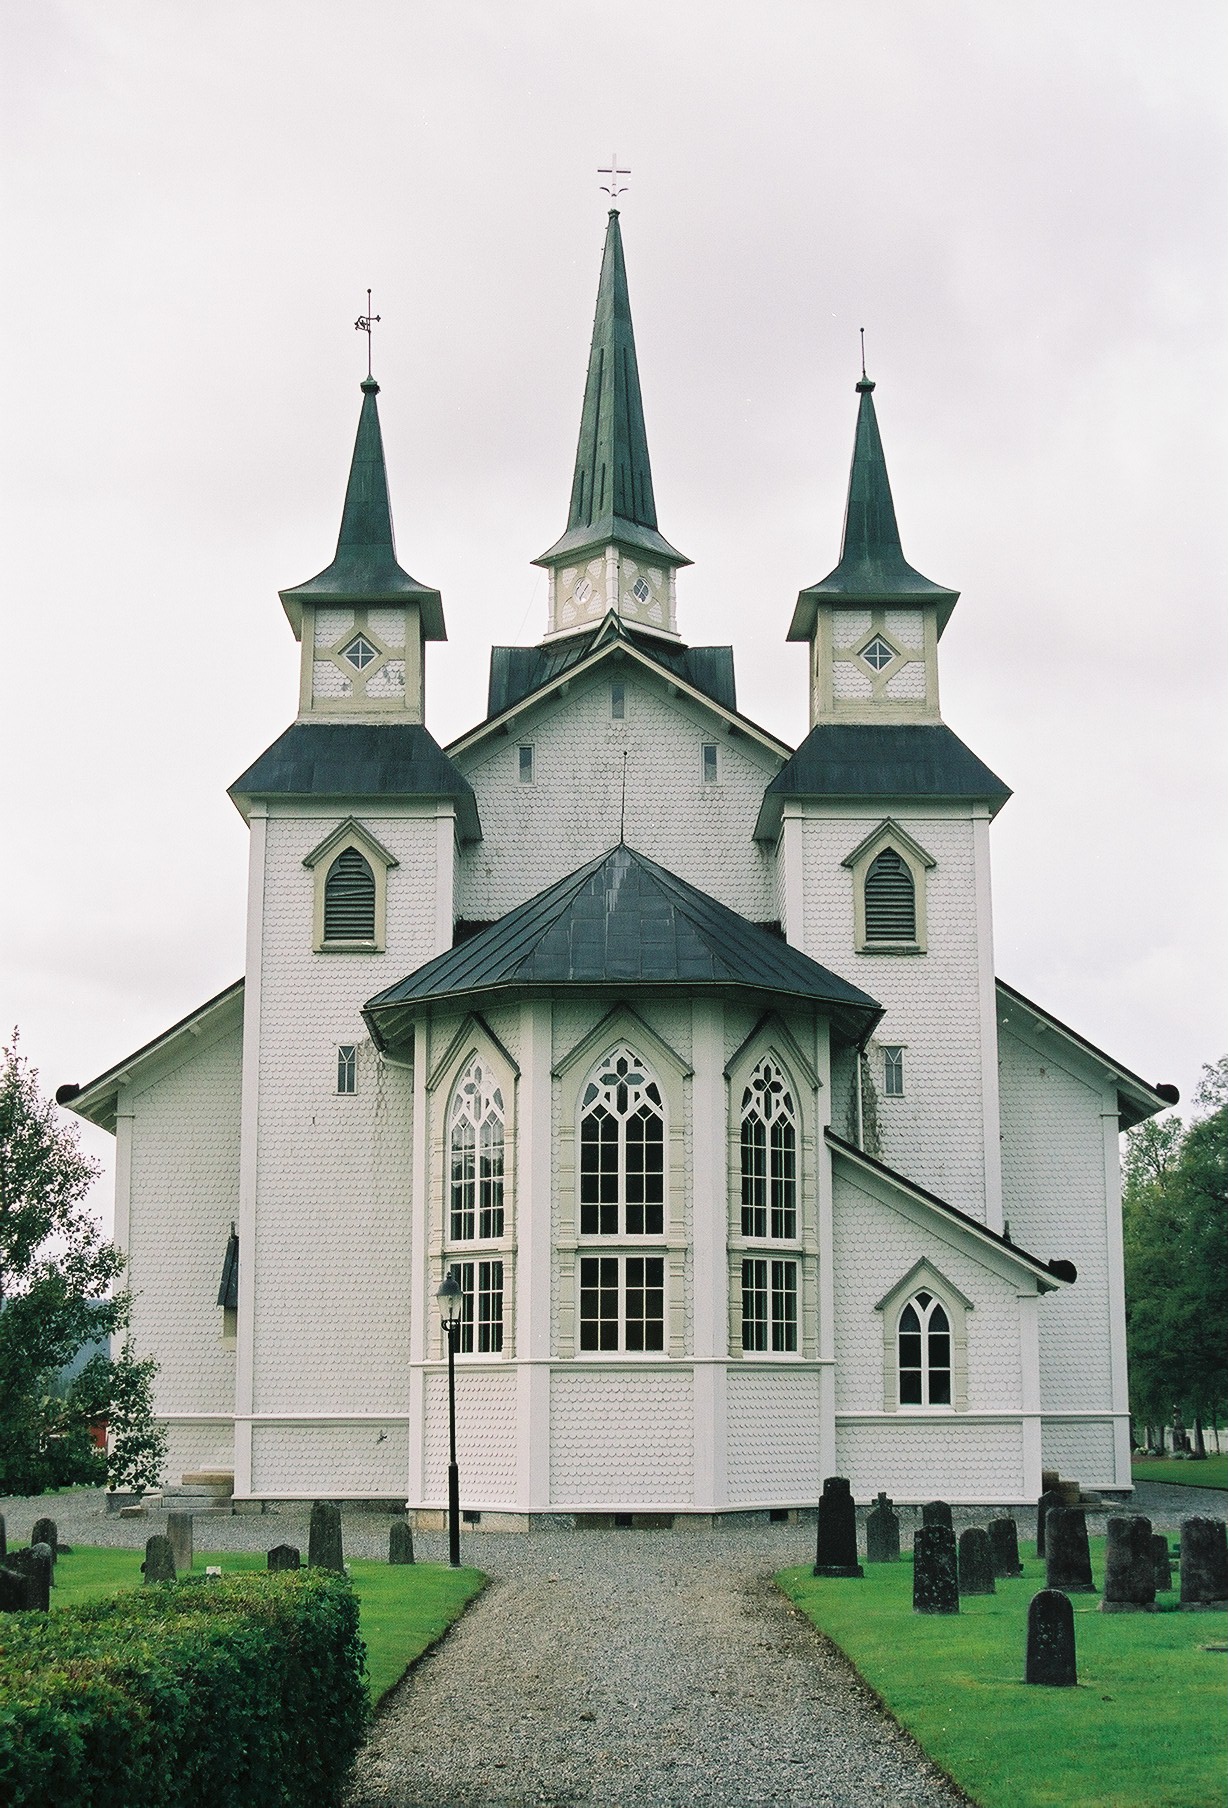 Duveds kyrka med omgivande kyrkogård, vy från öst. 

Bilderna är tagna av Martin Lagergren & Emelie Petersson, bebyggelseantikvarier vid Jämtlands läns museum, i samband med inventeringen, 2004-2005.